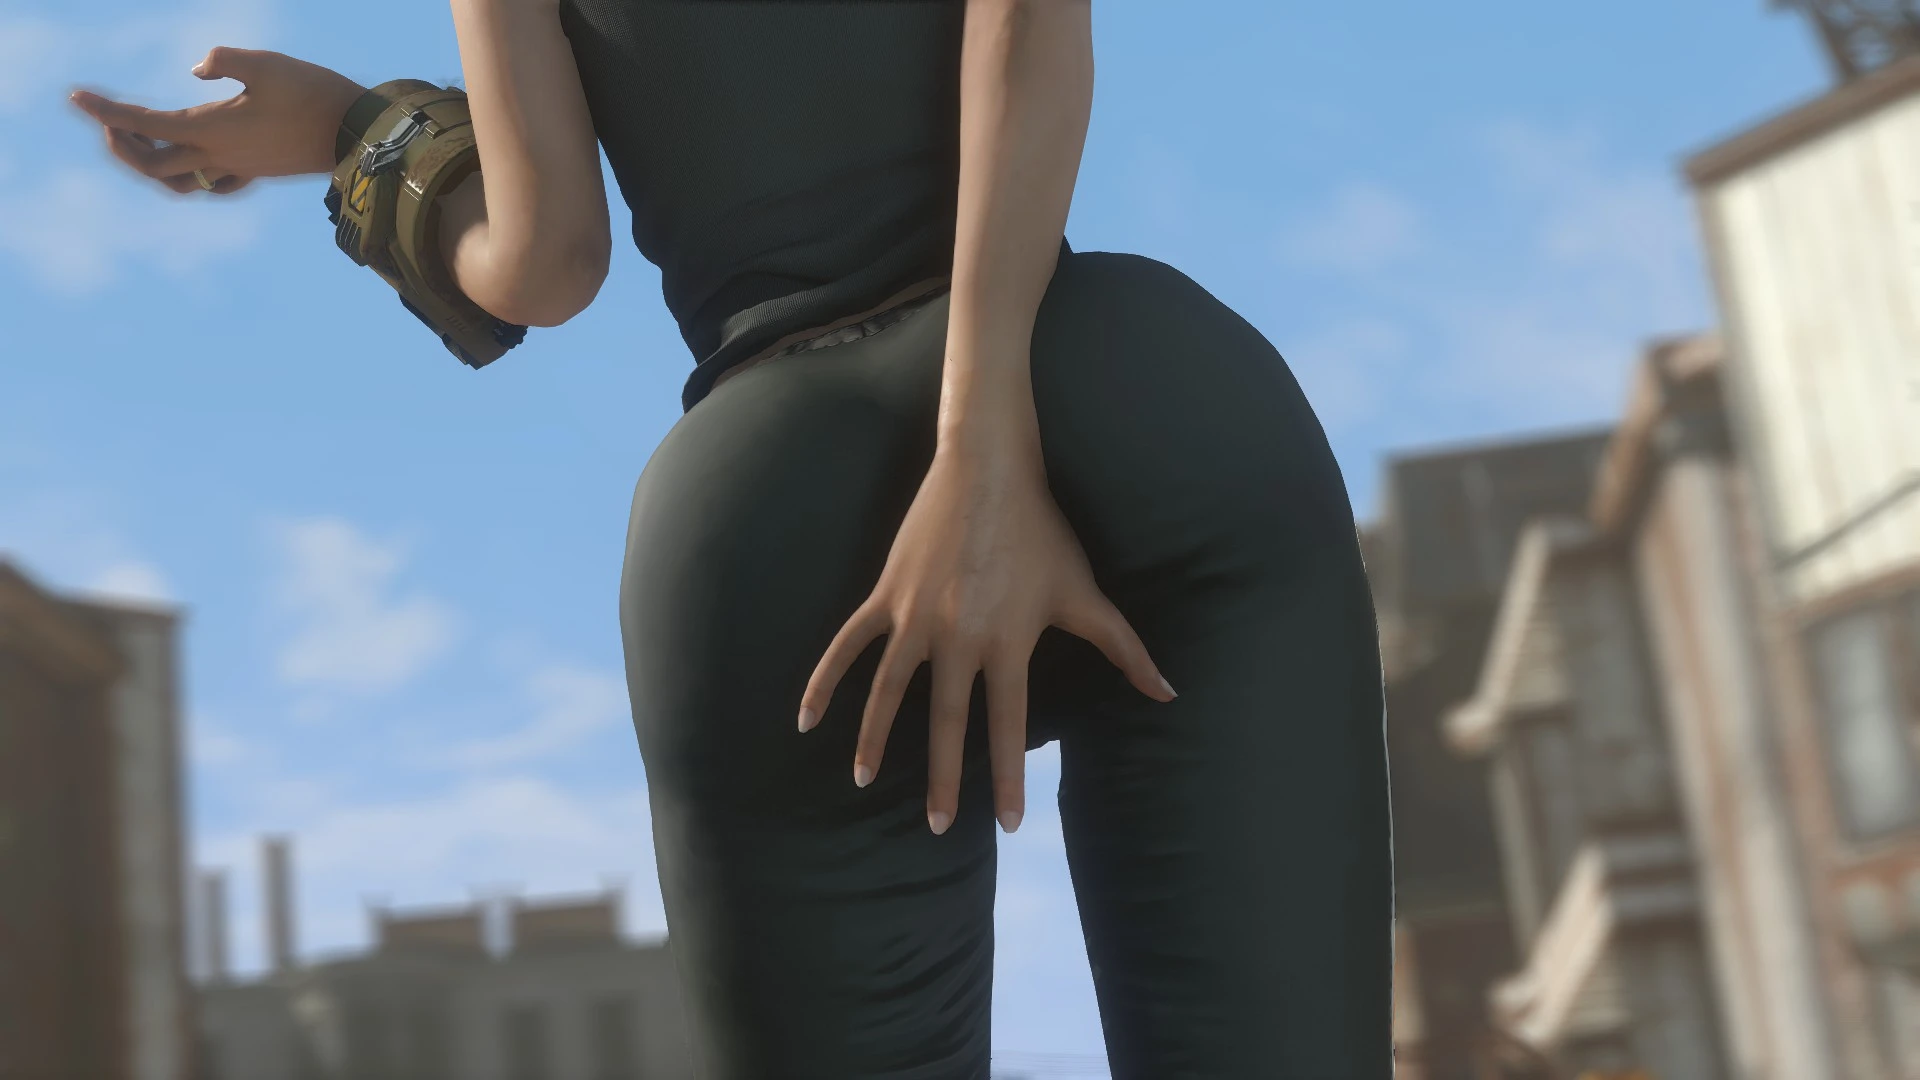 Nice Ass Images